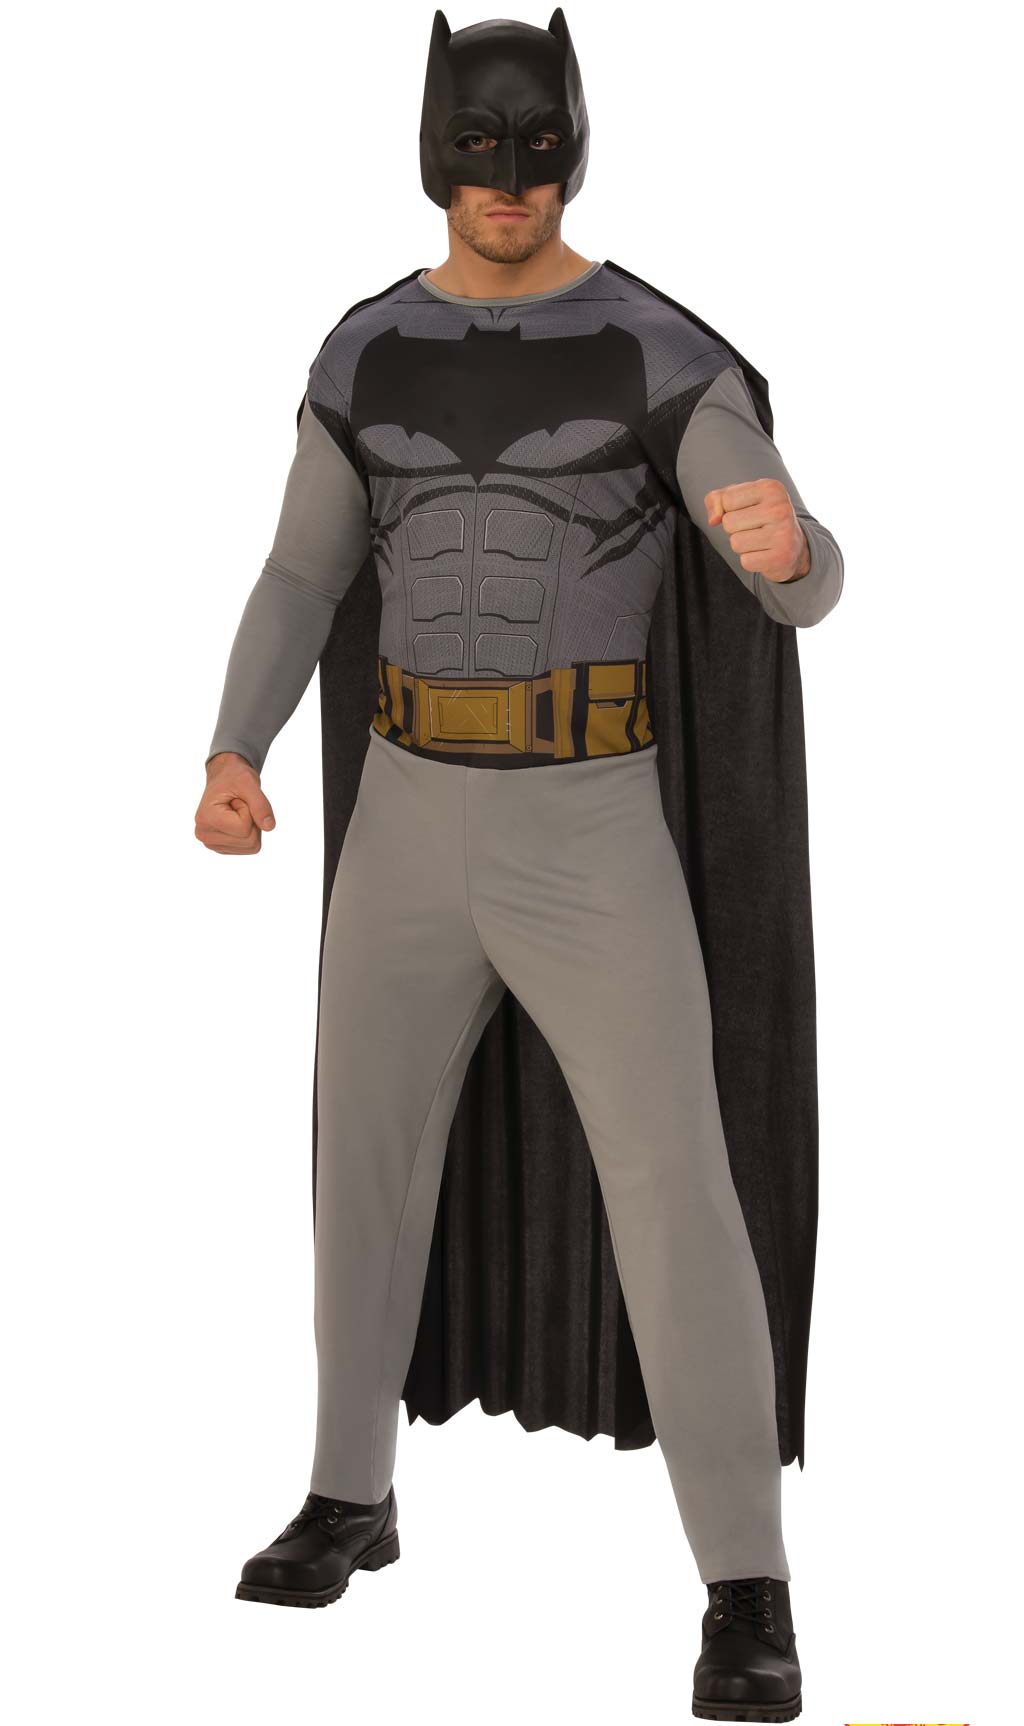 Costume da bambino di Batman™ Deluxe